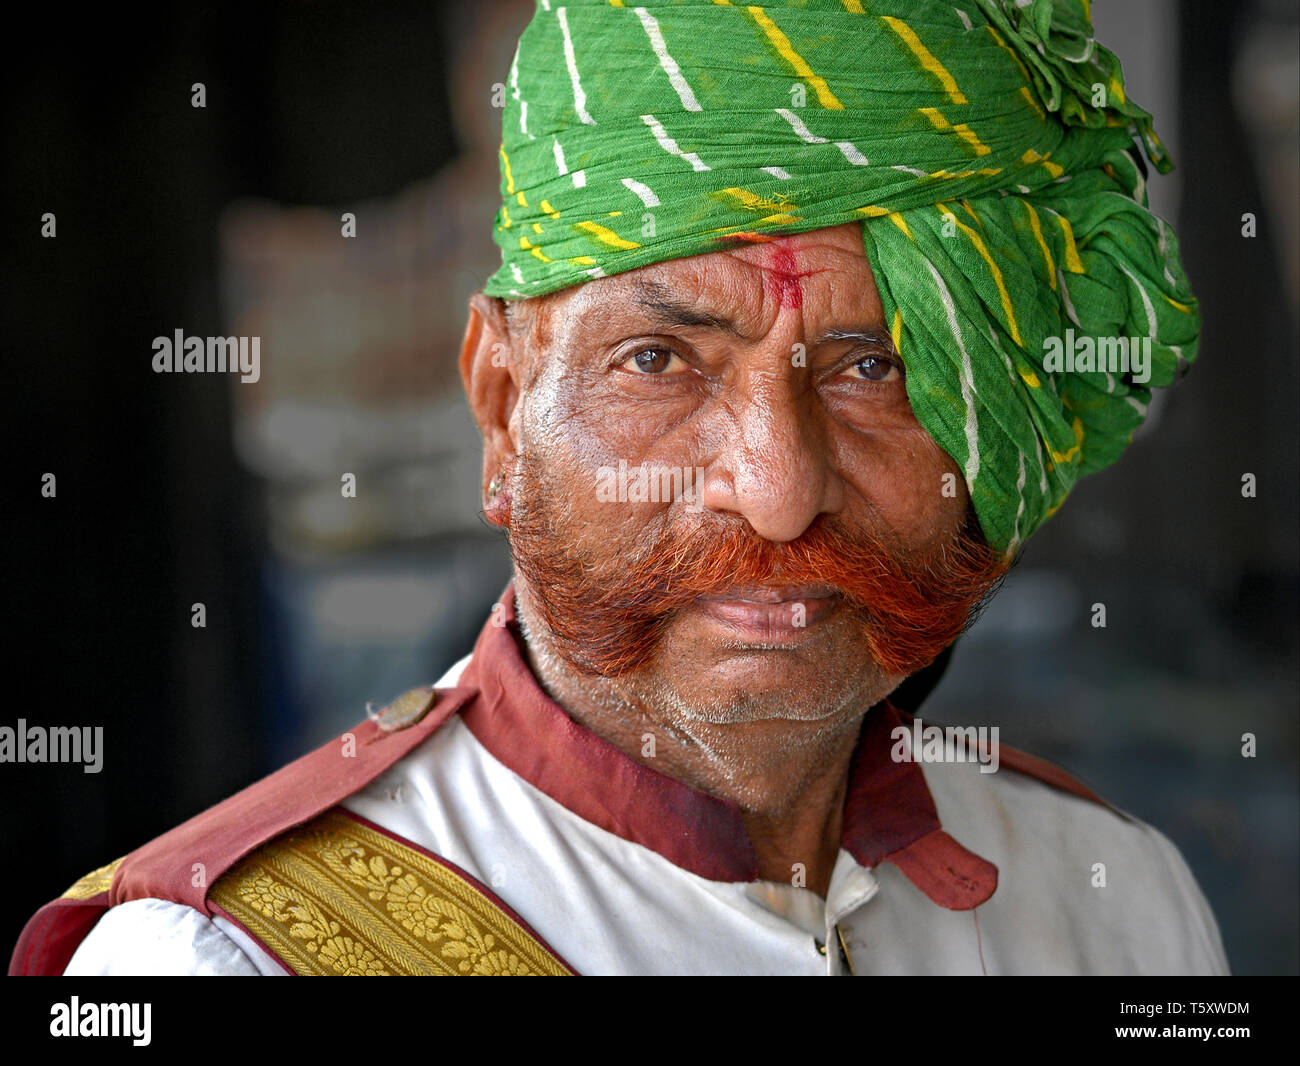 Ältere indische Rajasthani Wachmann mit Henna gefärbt freundlich Mutton chops und grünen Rajasthani Turban (pagari) posiert für die Kamera. Stockfoto